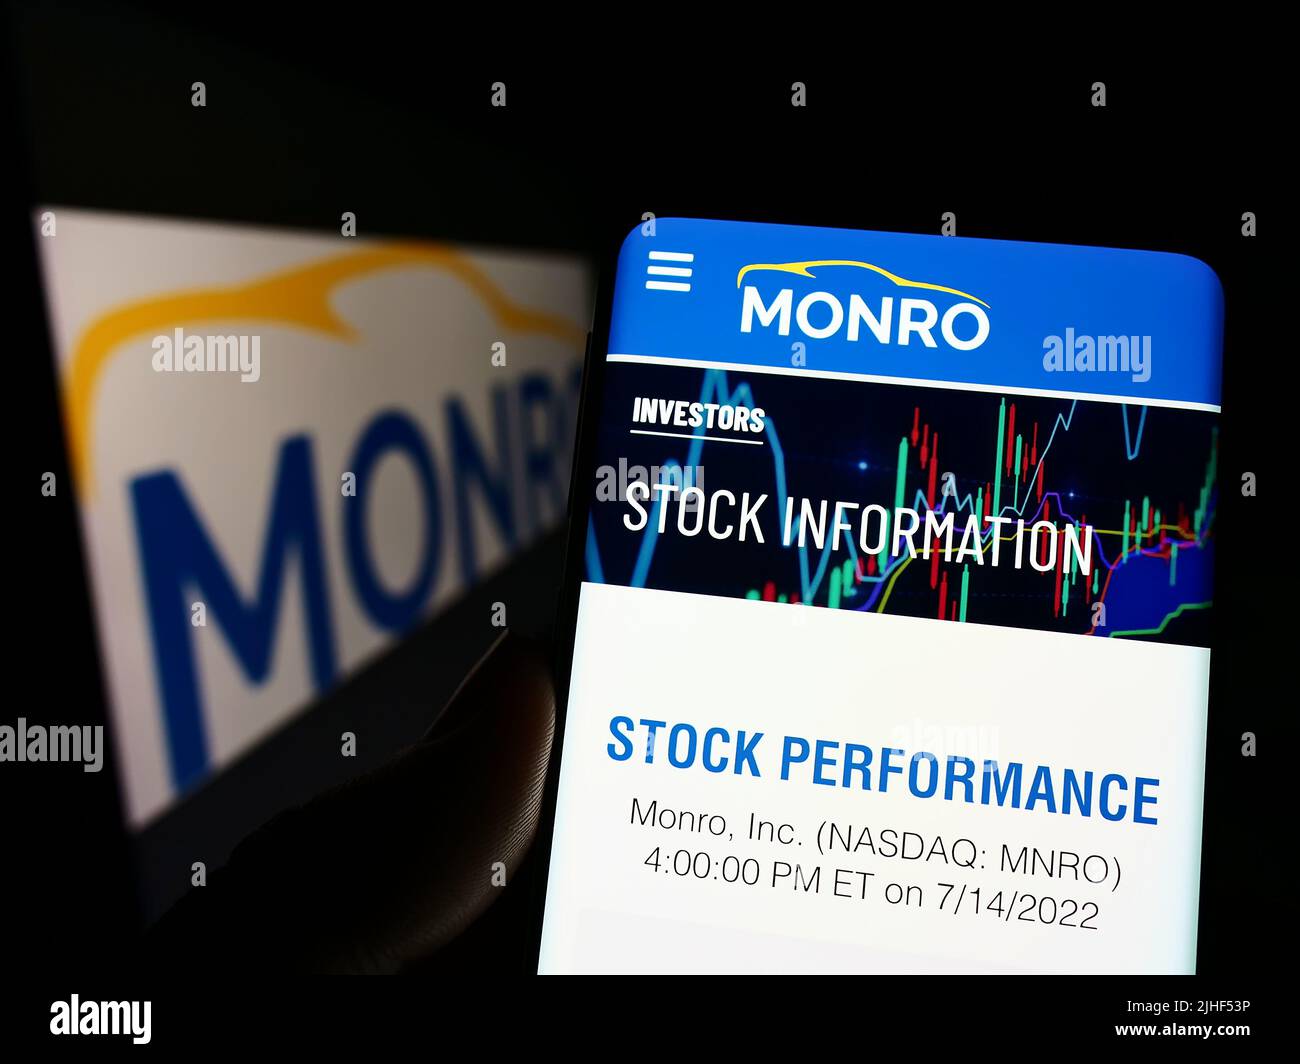 Personne tenant un smartphone avec la page Web de la société de service automobile américaine Monro Inc. À l'écran devant le logo. Concentrez-vous sur le centre de l'écran du téléphone. Banque D'Images